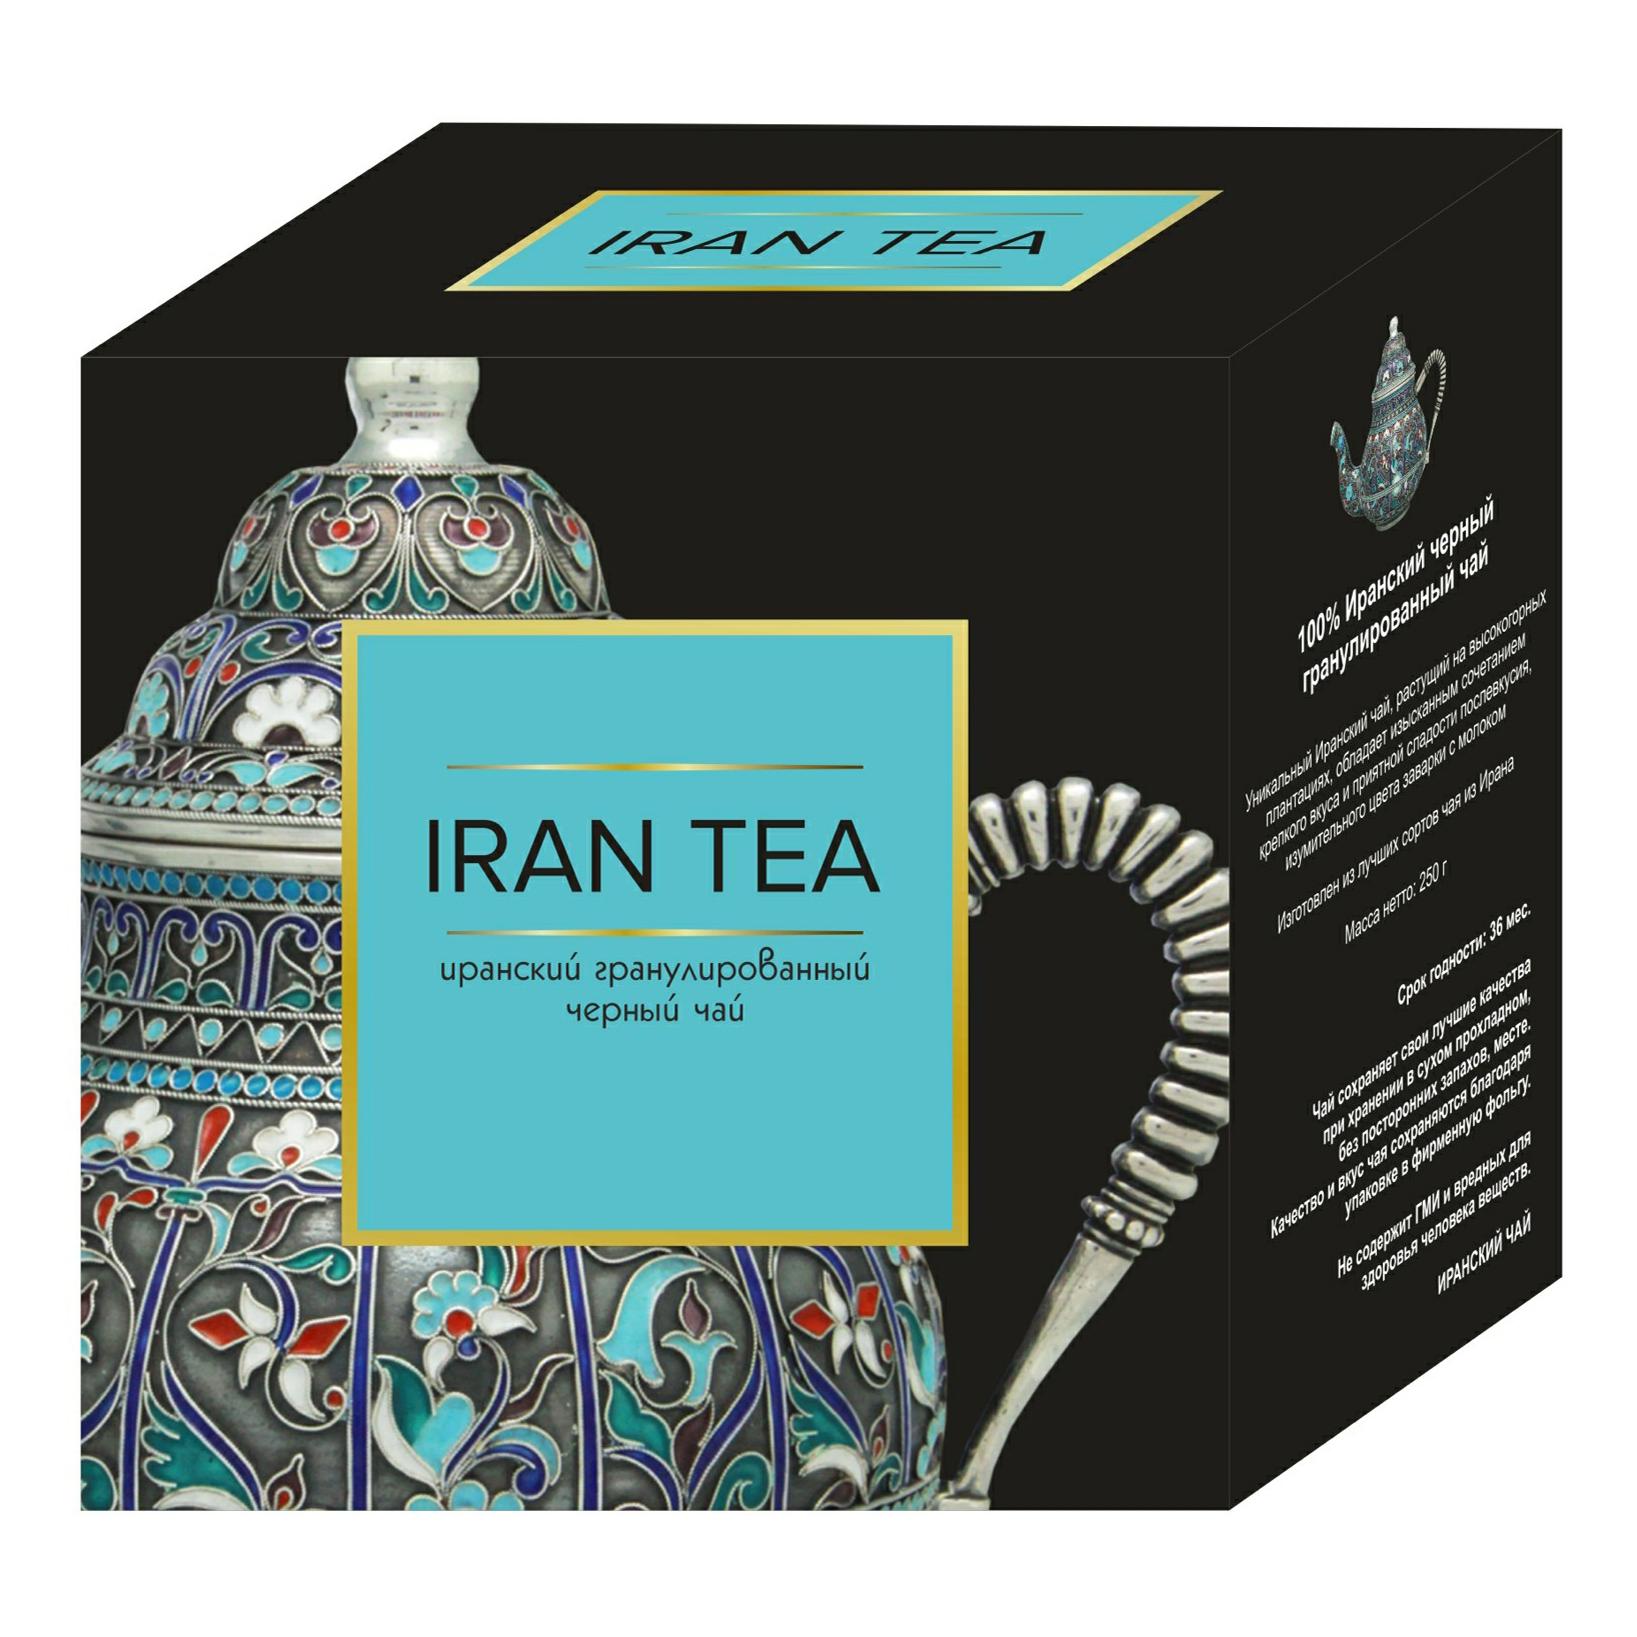 Чай черный Iran Tea классический гранулированный 250 гр., картон